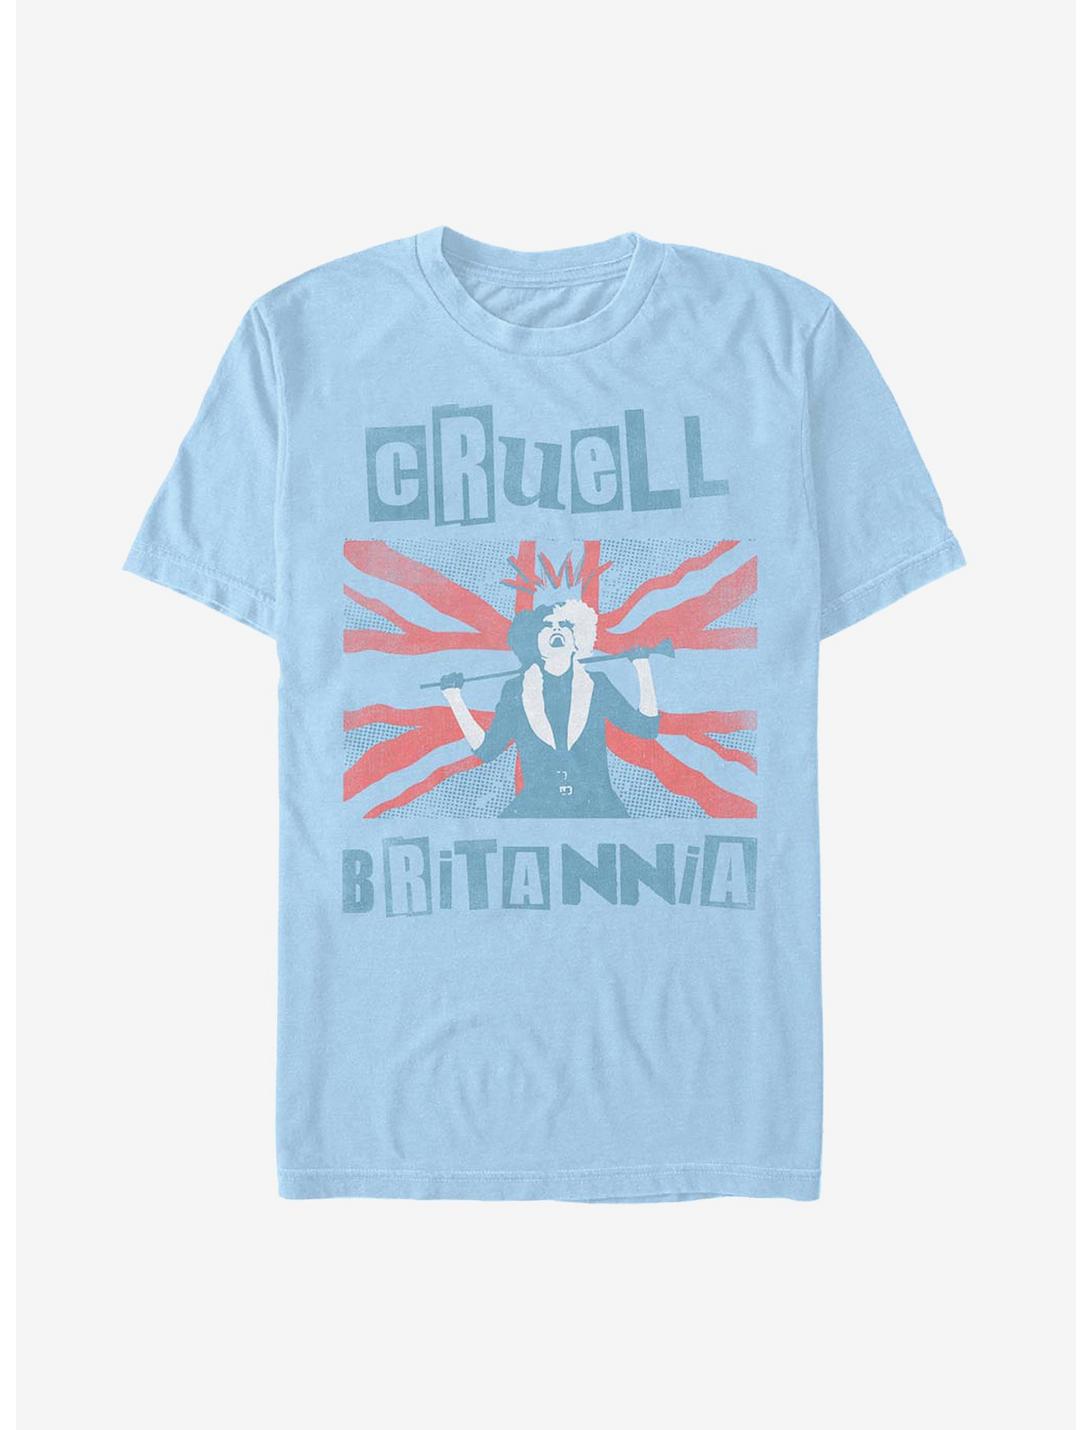 Disney Cruella Britannia T-Shirt, LT BLUE, hi-res